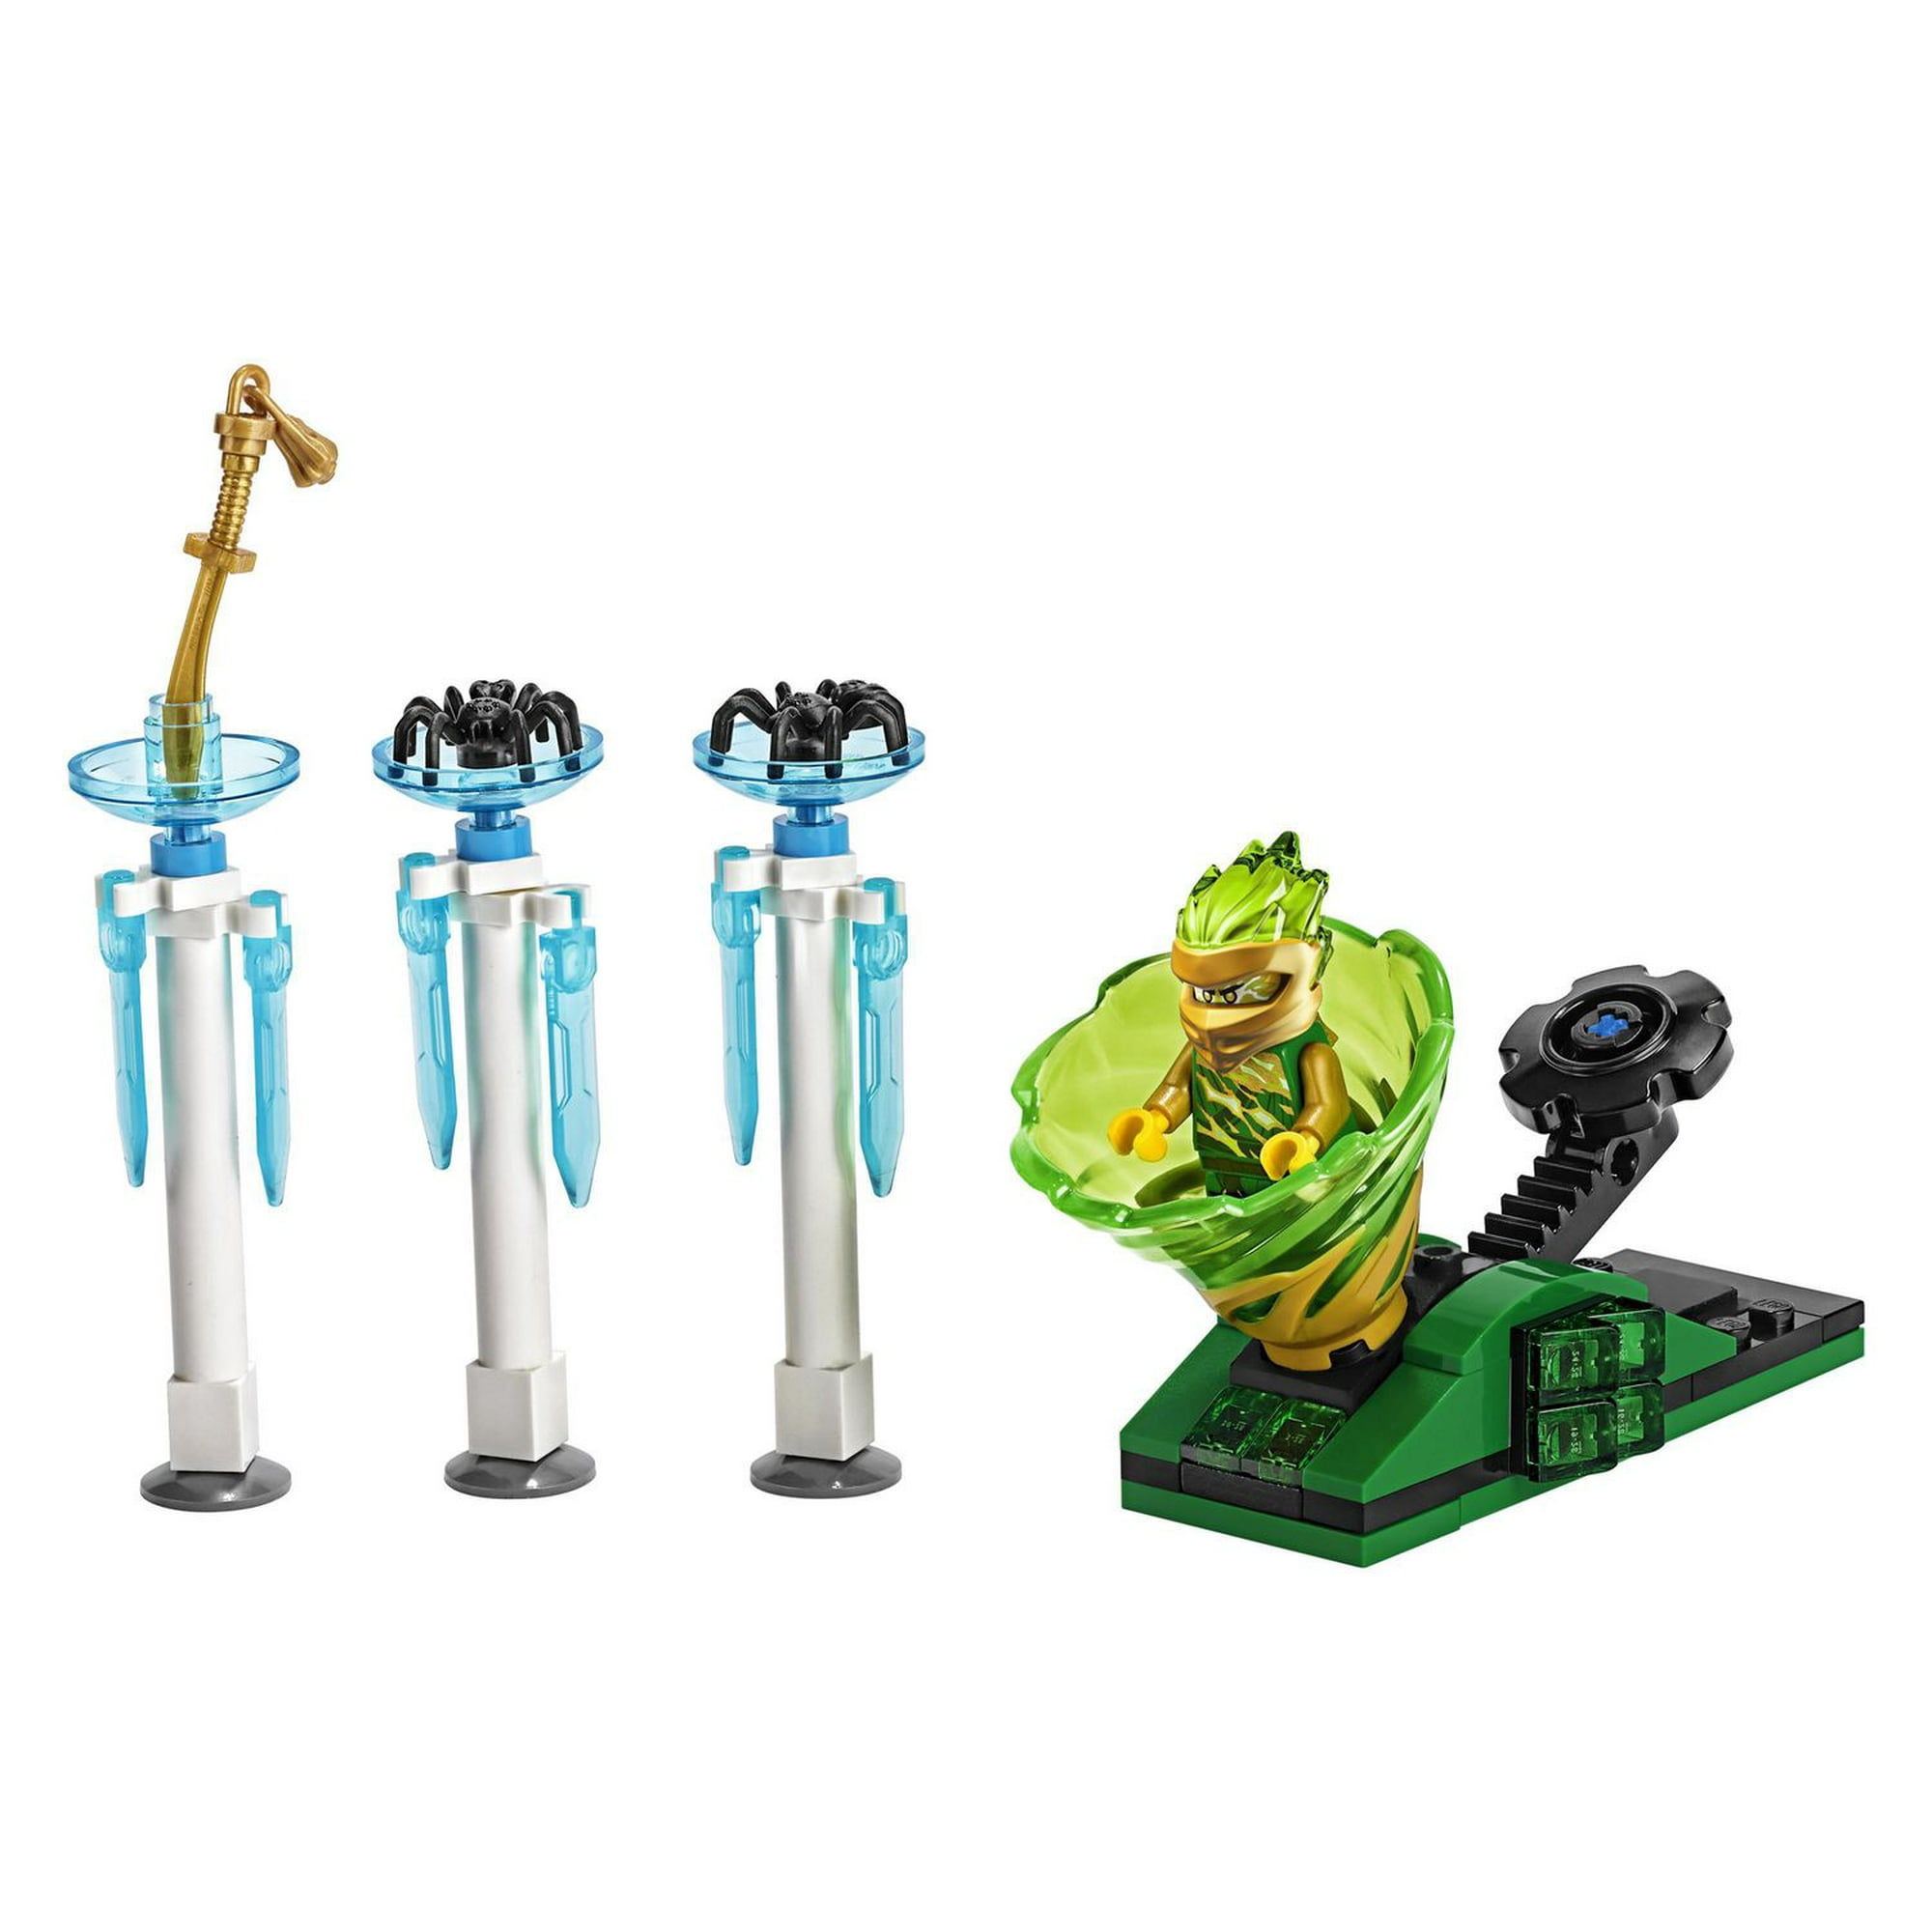 LEGO NINJAGO Spinjitzu Slam - Lloyd 70681 Ninja Toy Building Kit